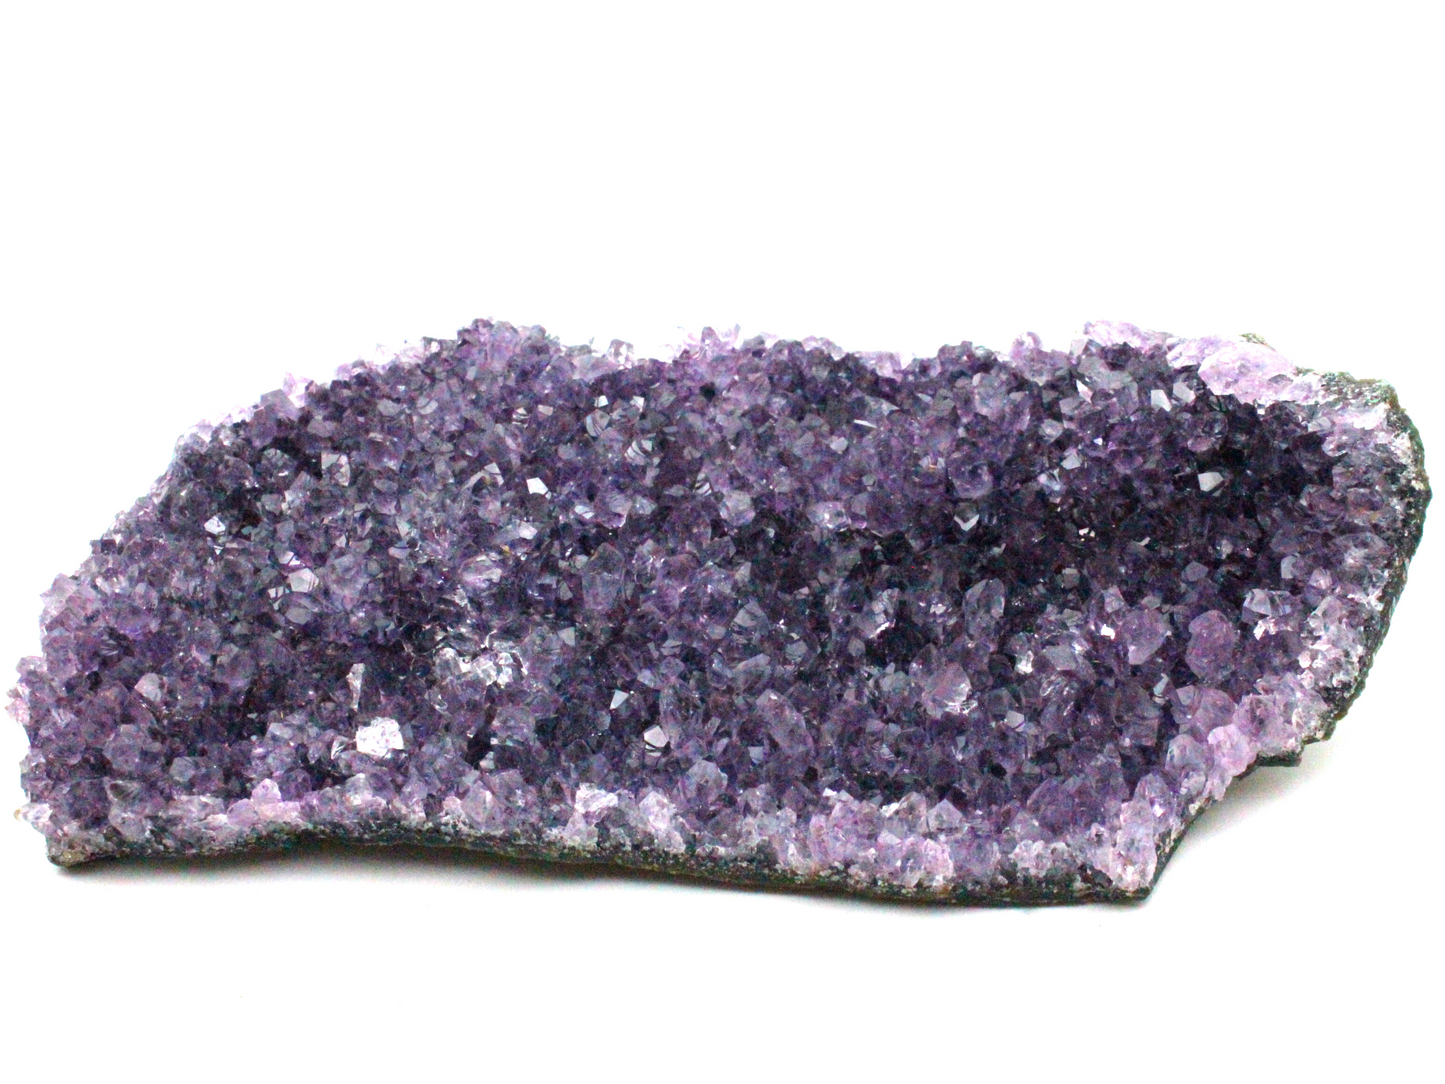 Amethyst Clusters - Royal Purple